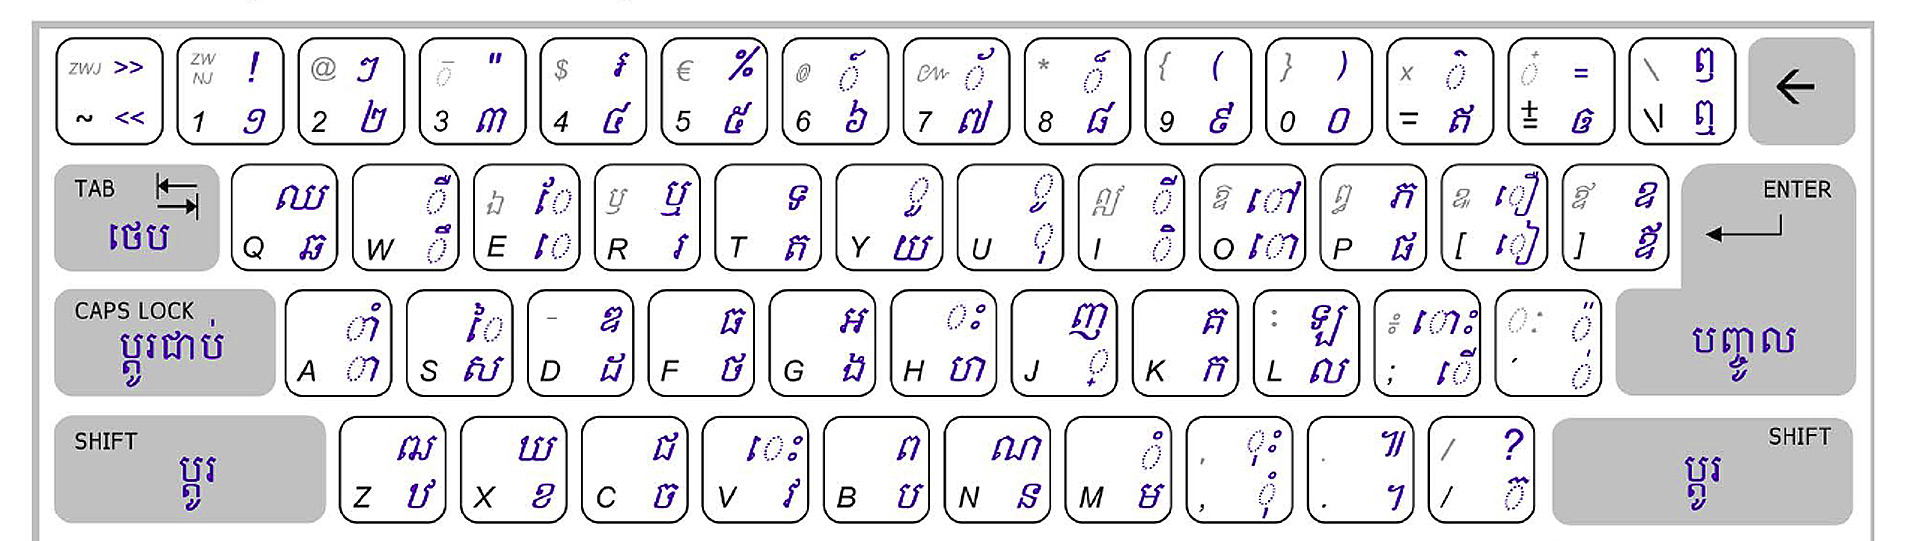 ការដំឡើងខ្មែរ Key Board នៅក្នុង Windows 10 How To Install Khmer Unicode